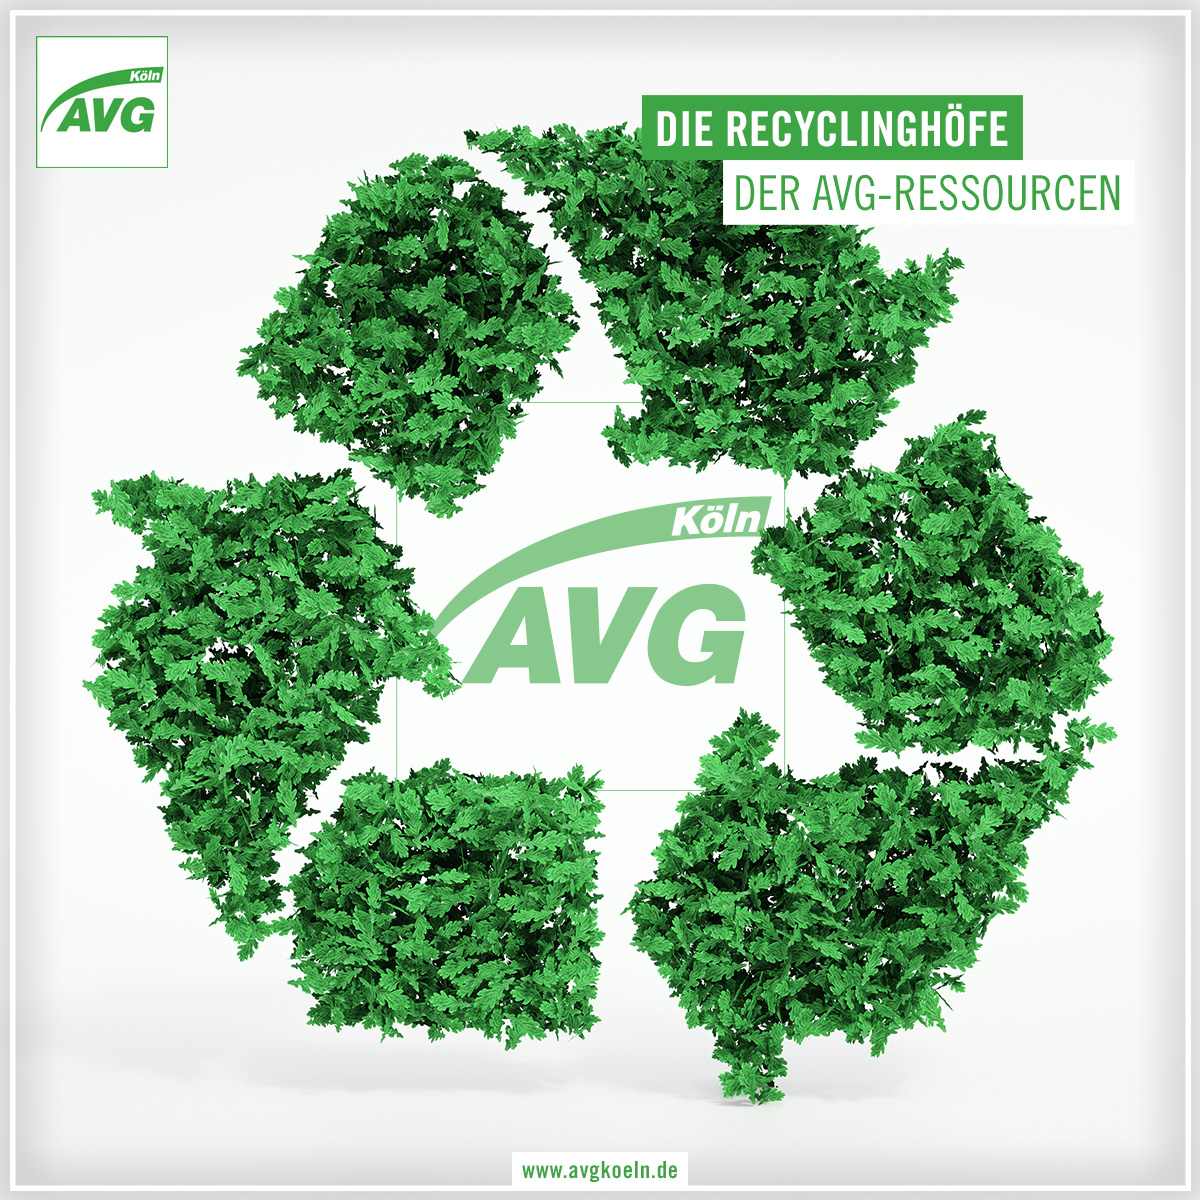 Auch wenn unsere Recyclinghöfe als Anlaufstelle für Handwerksbetriebe und kleine Gewerbetreibende dienen, sind auch Kölnerinnen und Kölner sind herzlich willkommen, um ihre Abfallreste abzugeben. Auf unserer Seite sind alle Informationen zu finden.